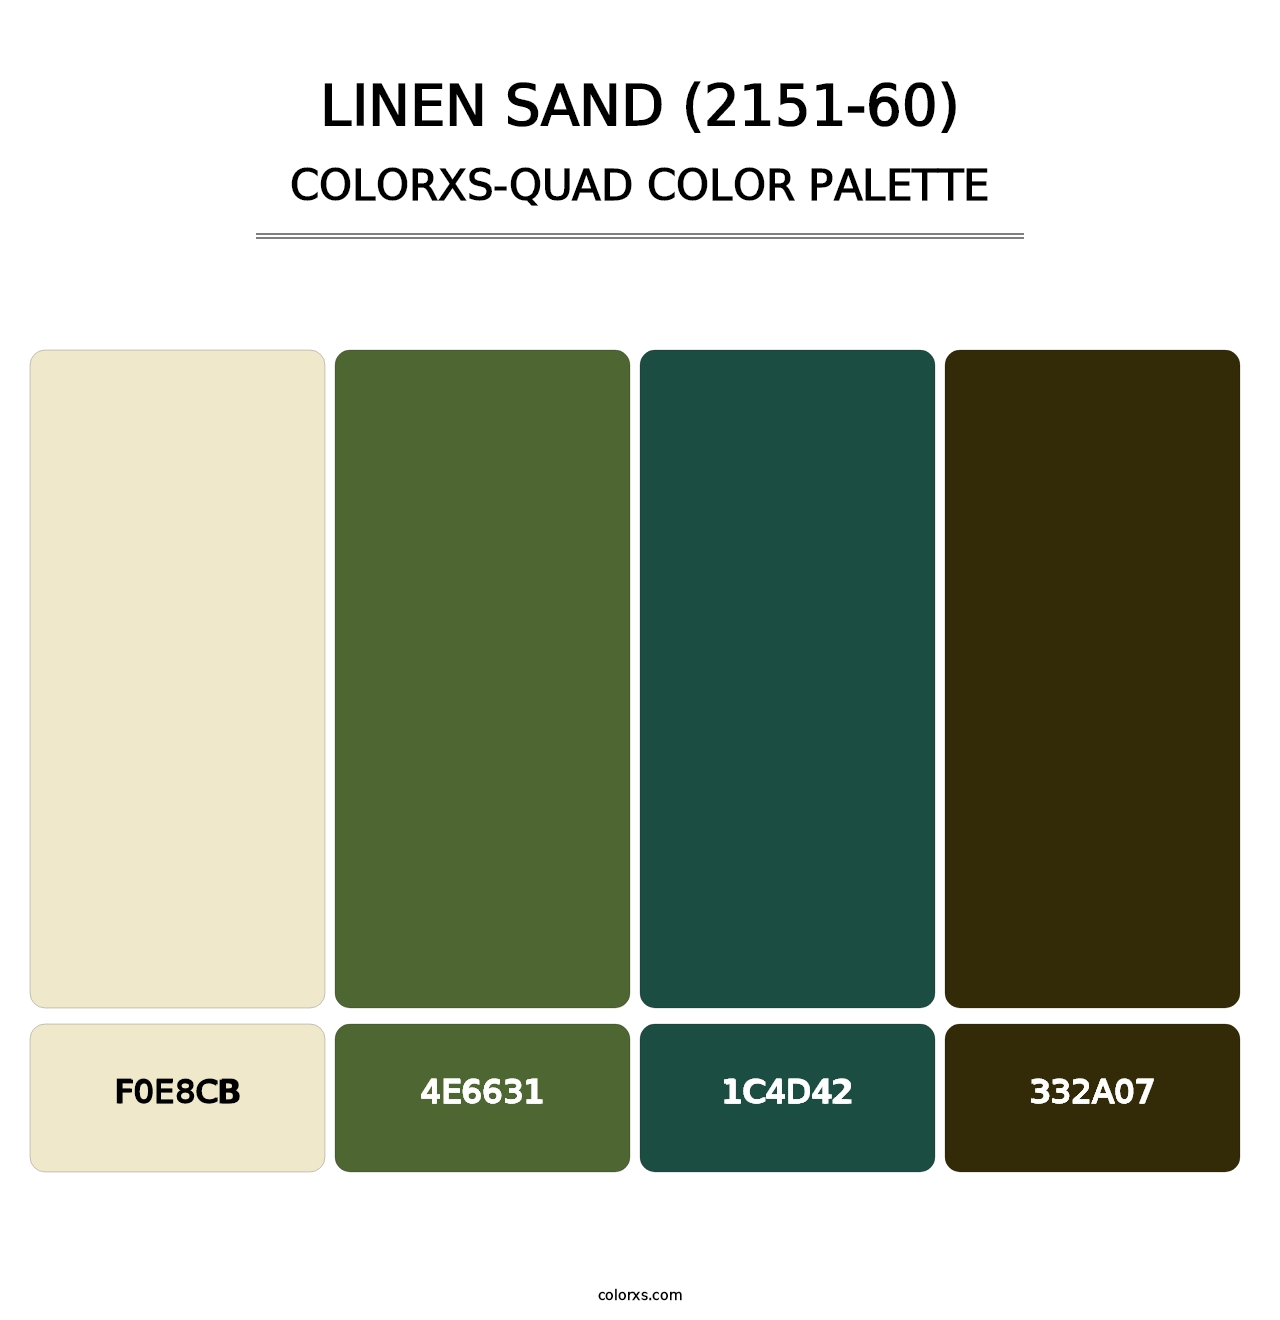 Linen Sand (2151-60) - Colorxs Quad Palette